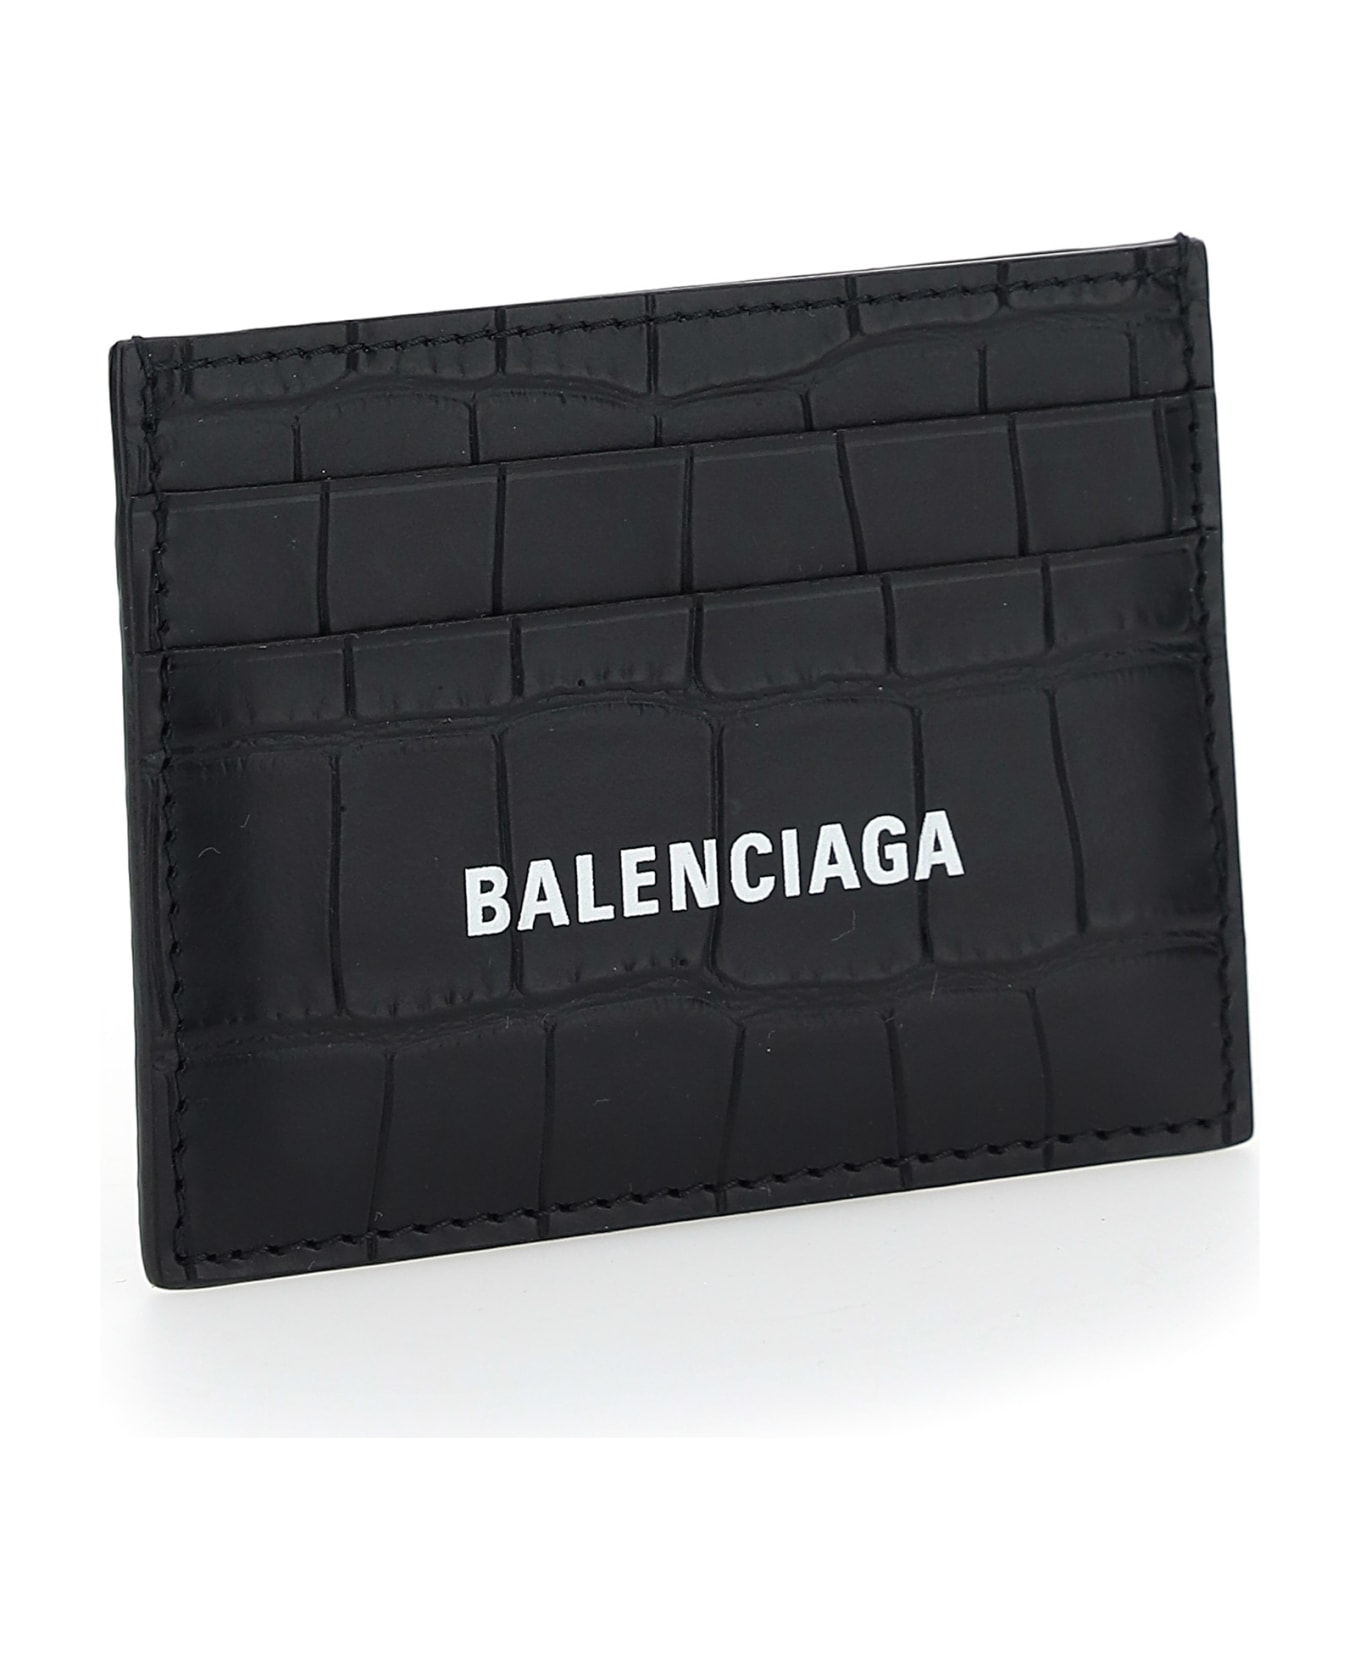 Balenciaga Card Holder - Black